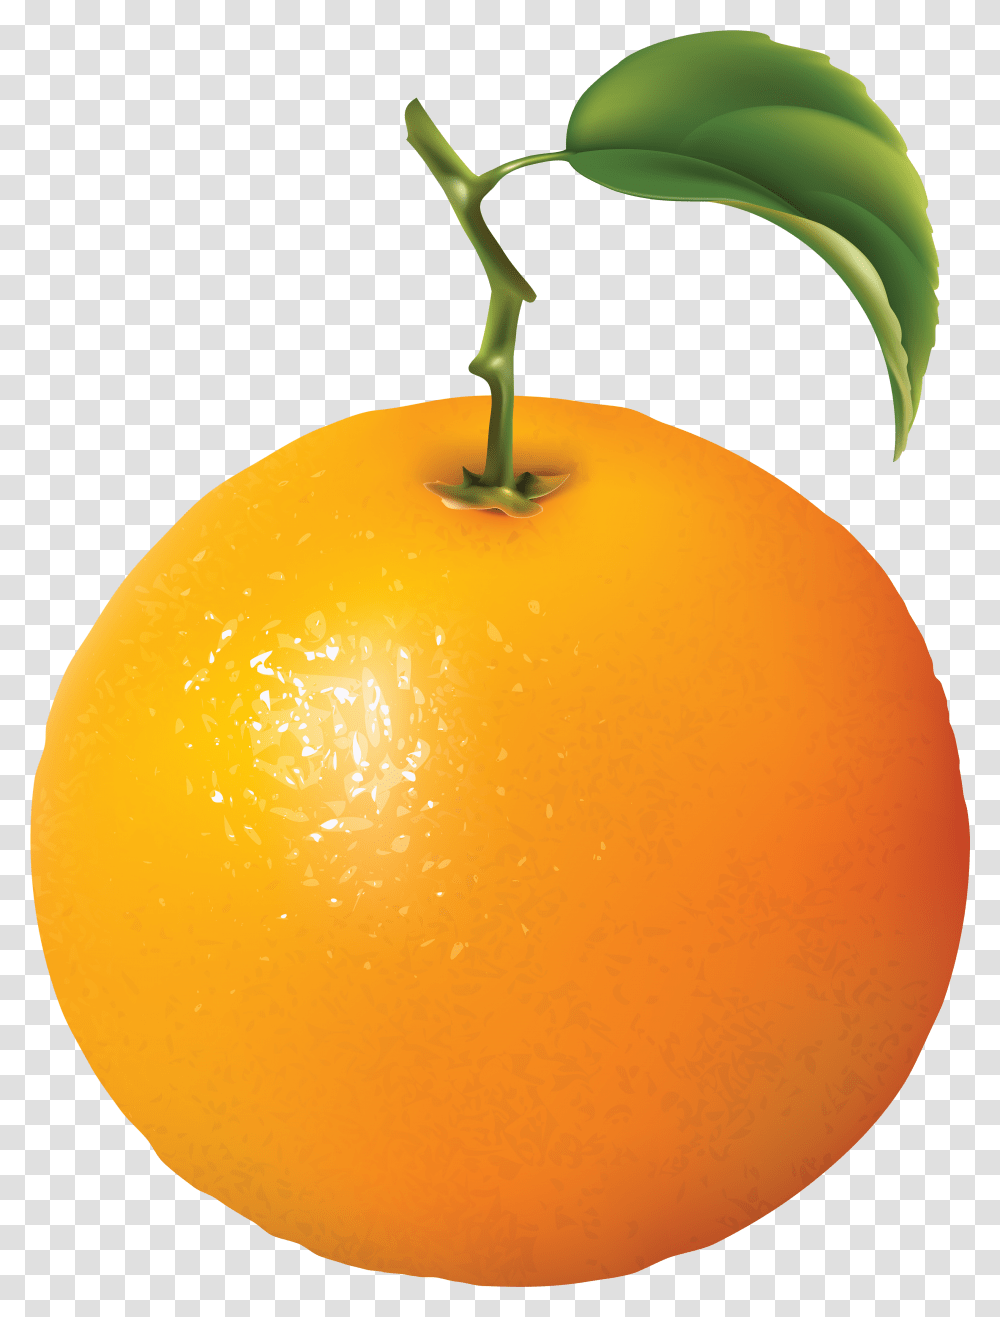 Fruits Clipart Diagram Of An Orange, Citrus Fruit, Plant, Food, Grapefruit Transparent Png